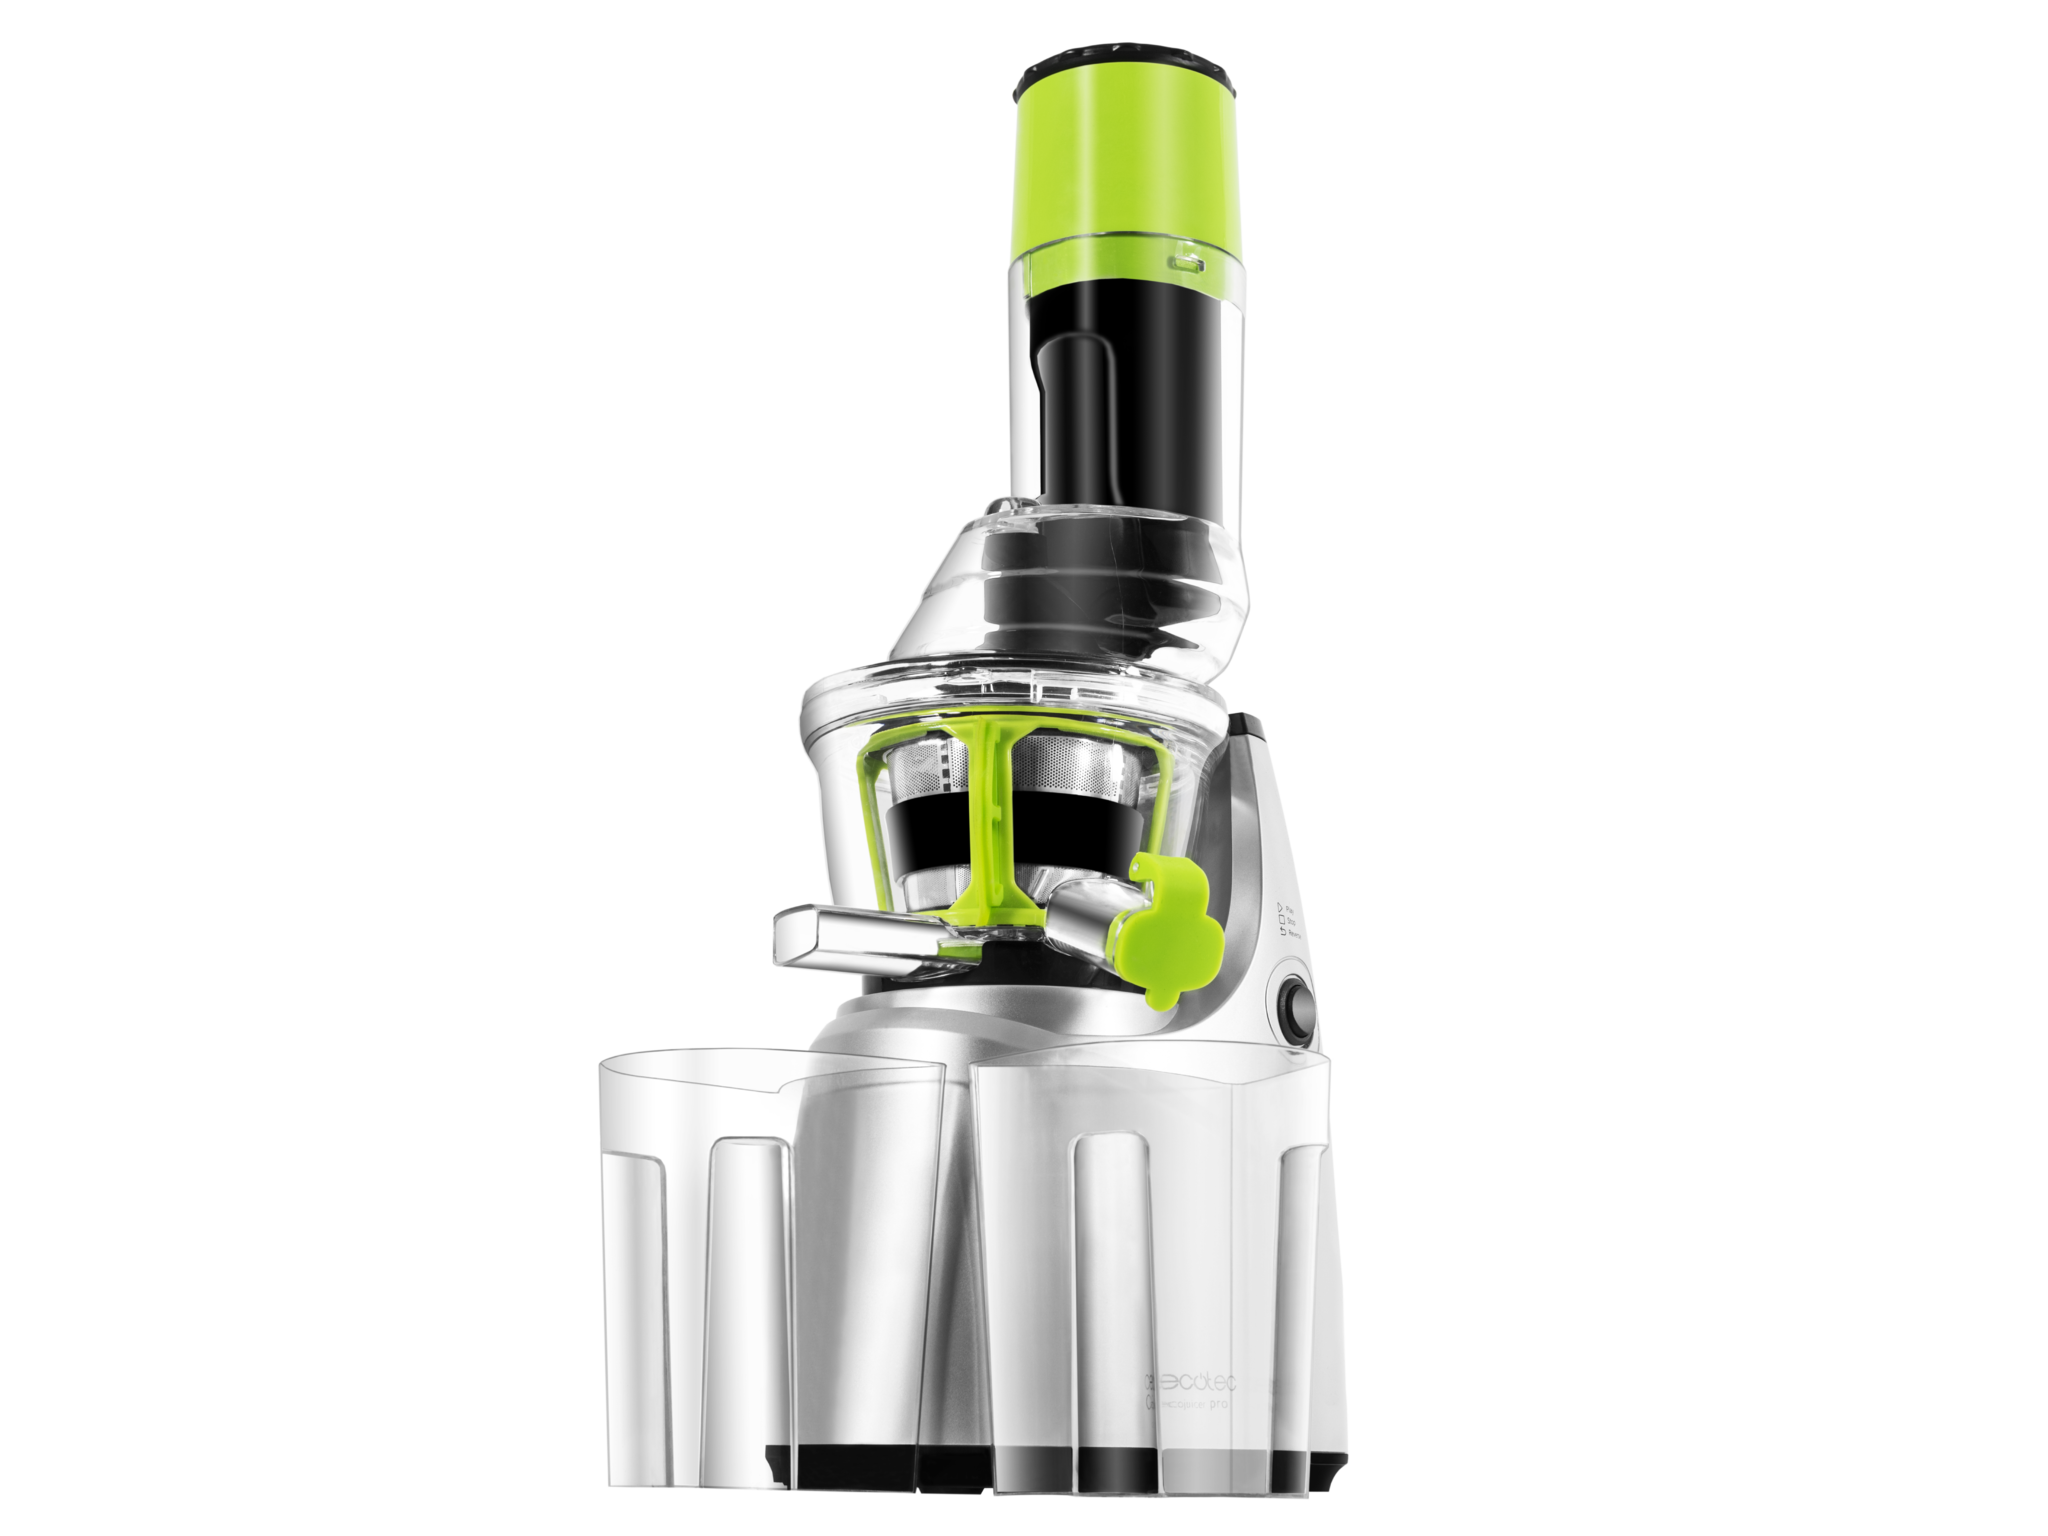 Cecojuicer Pro extracteur de jus par pression à froid, pour fruits et légumes, extracteur de jus avec tube d’embouchure XL pour introduire des fruits entiers, système Slow Juicer et 250 W